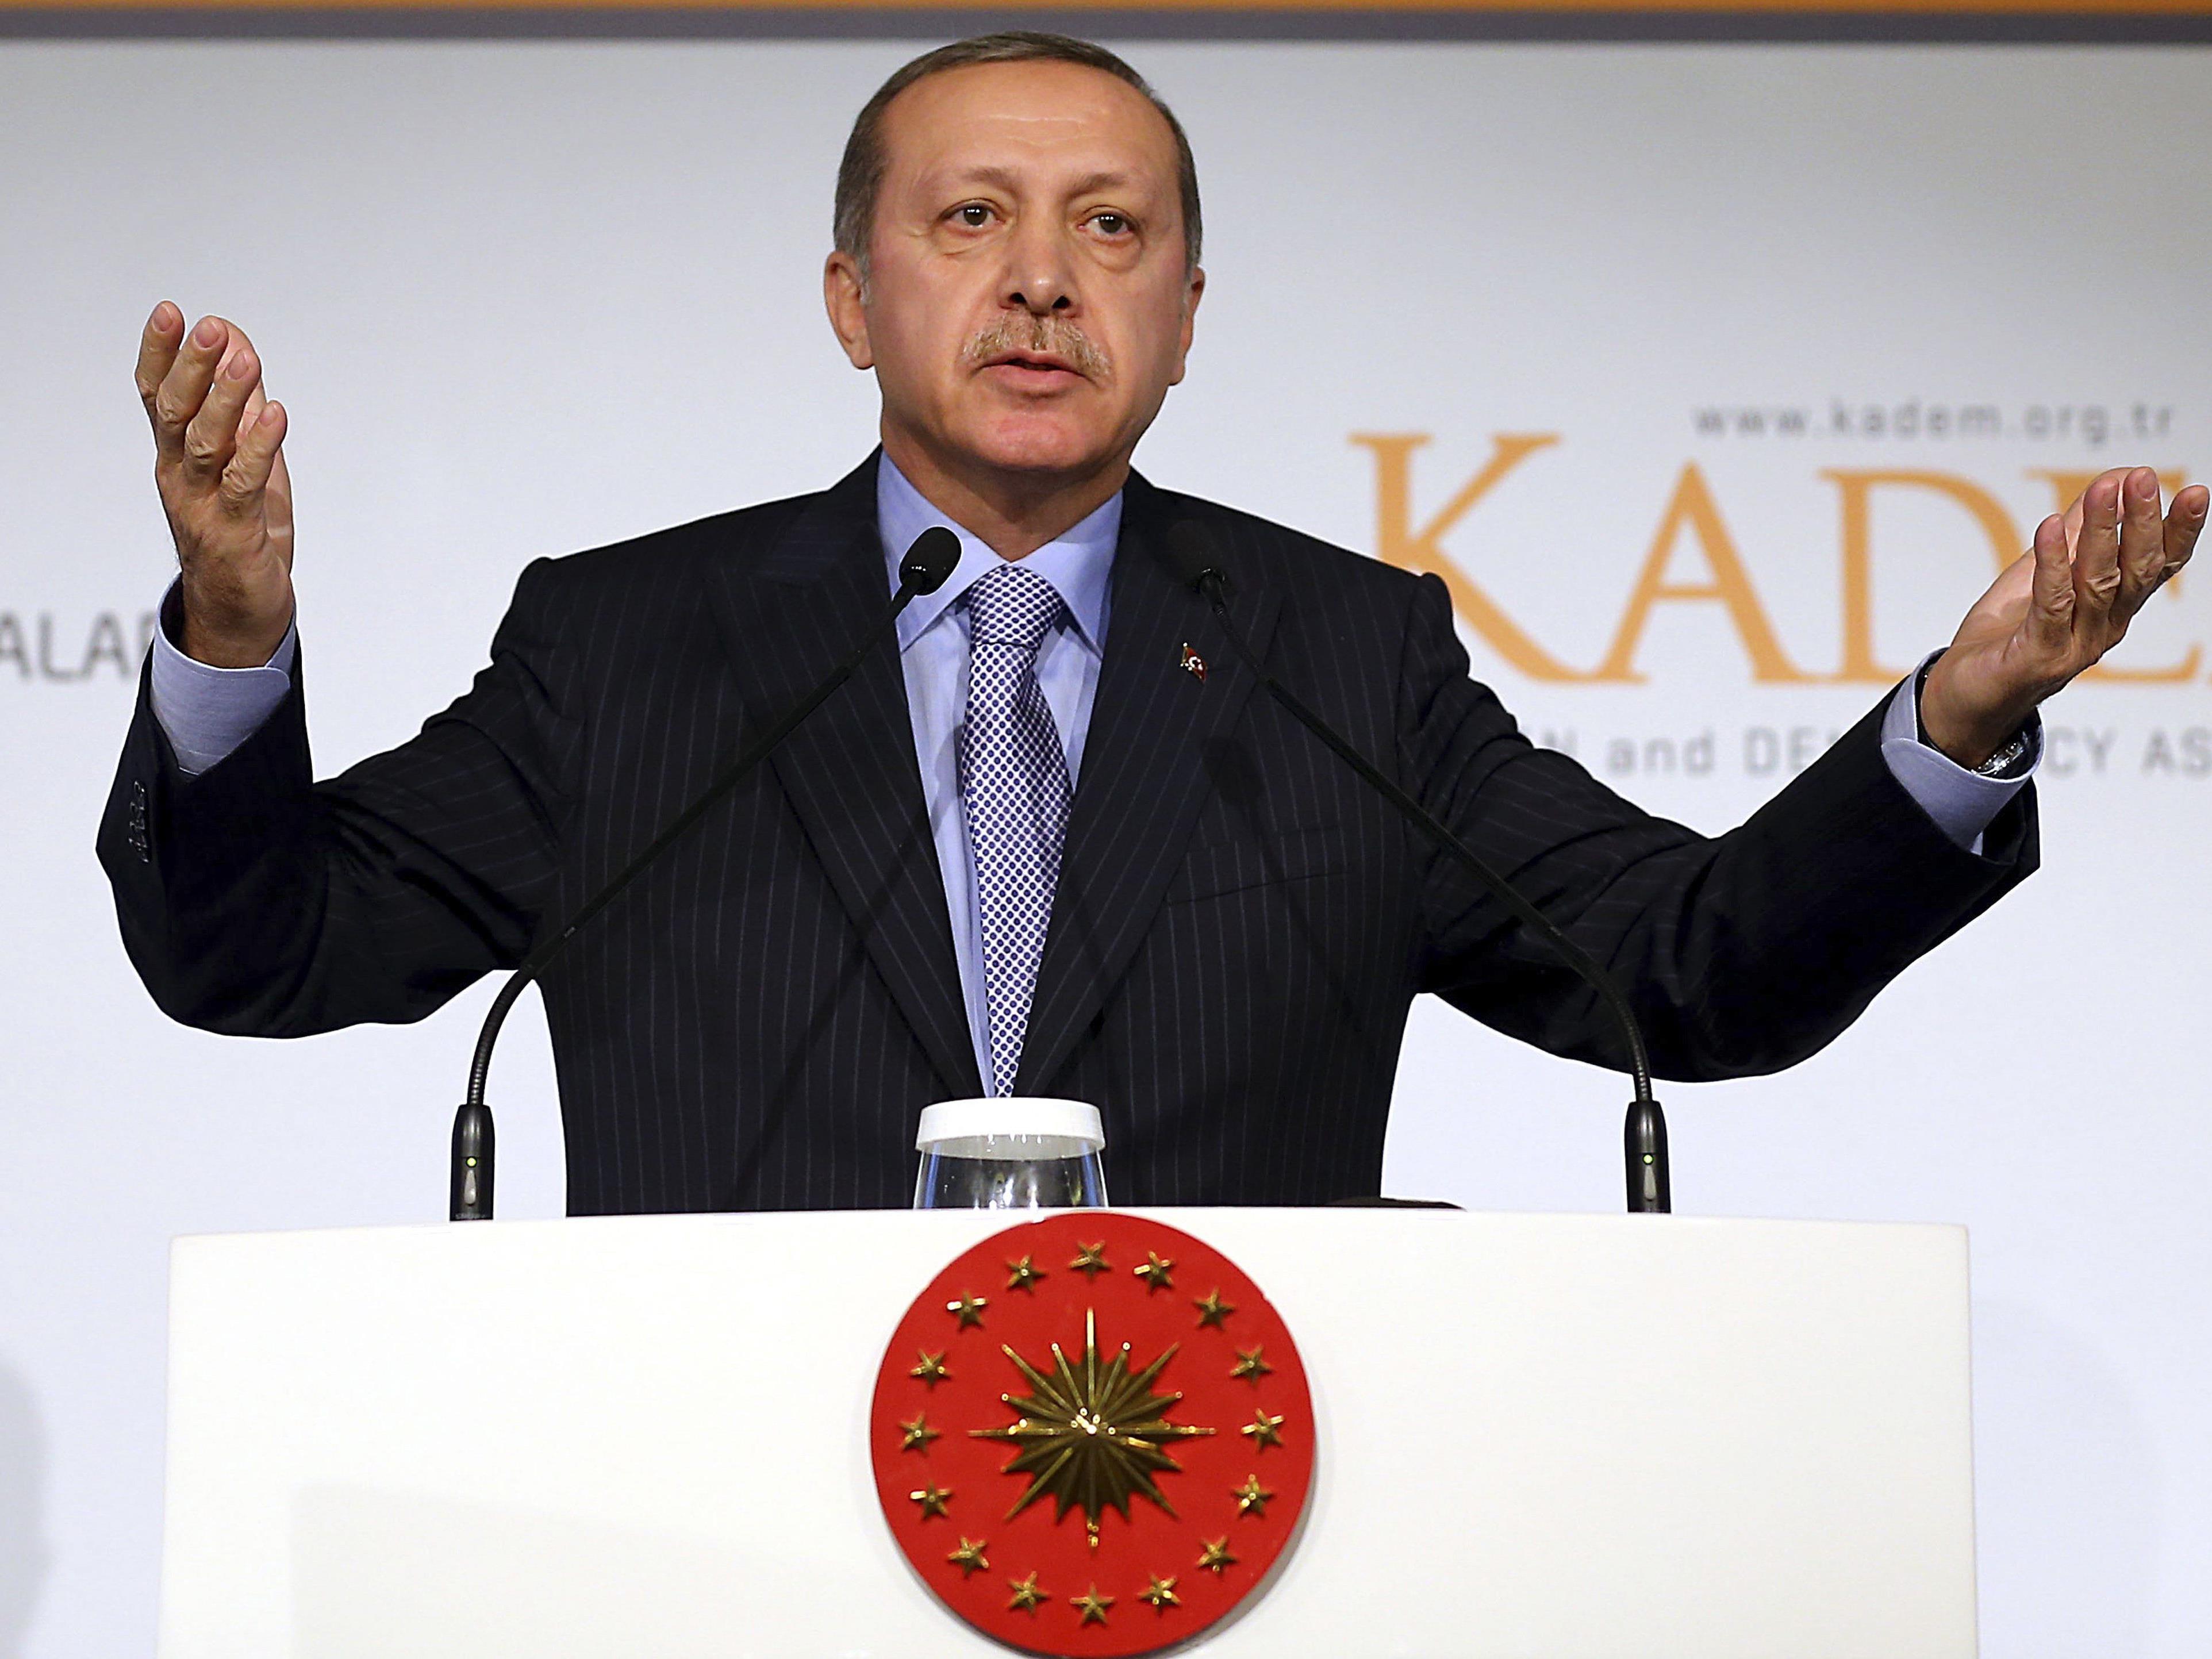 Die Fremden hätten es nur auf die Reichtümer der Muslime abgesehen, sagte Erdogan bei einer Konferenz der Organisation für Islamische Zusammenarbeit (OIC) in Istanbul.